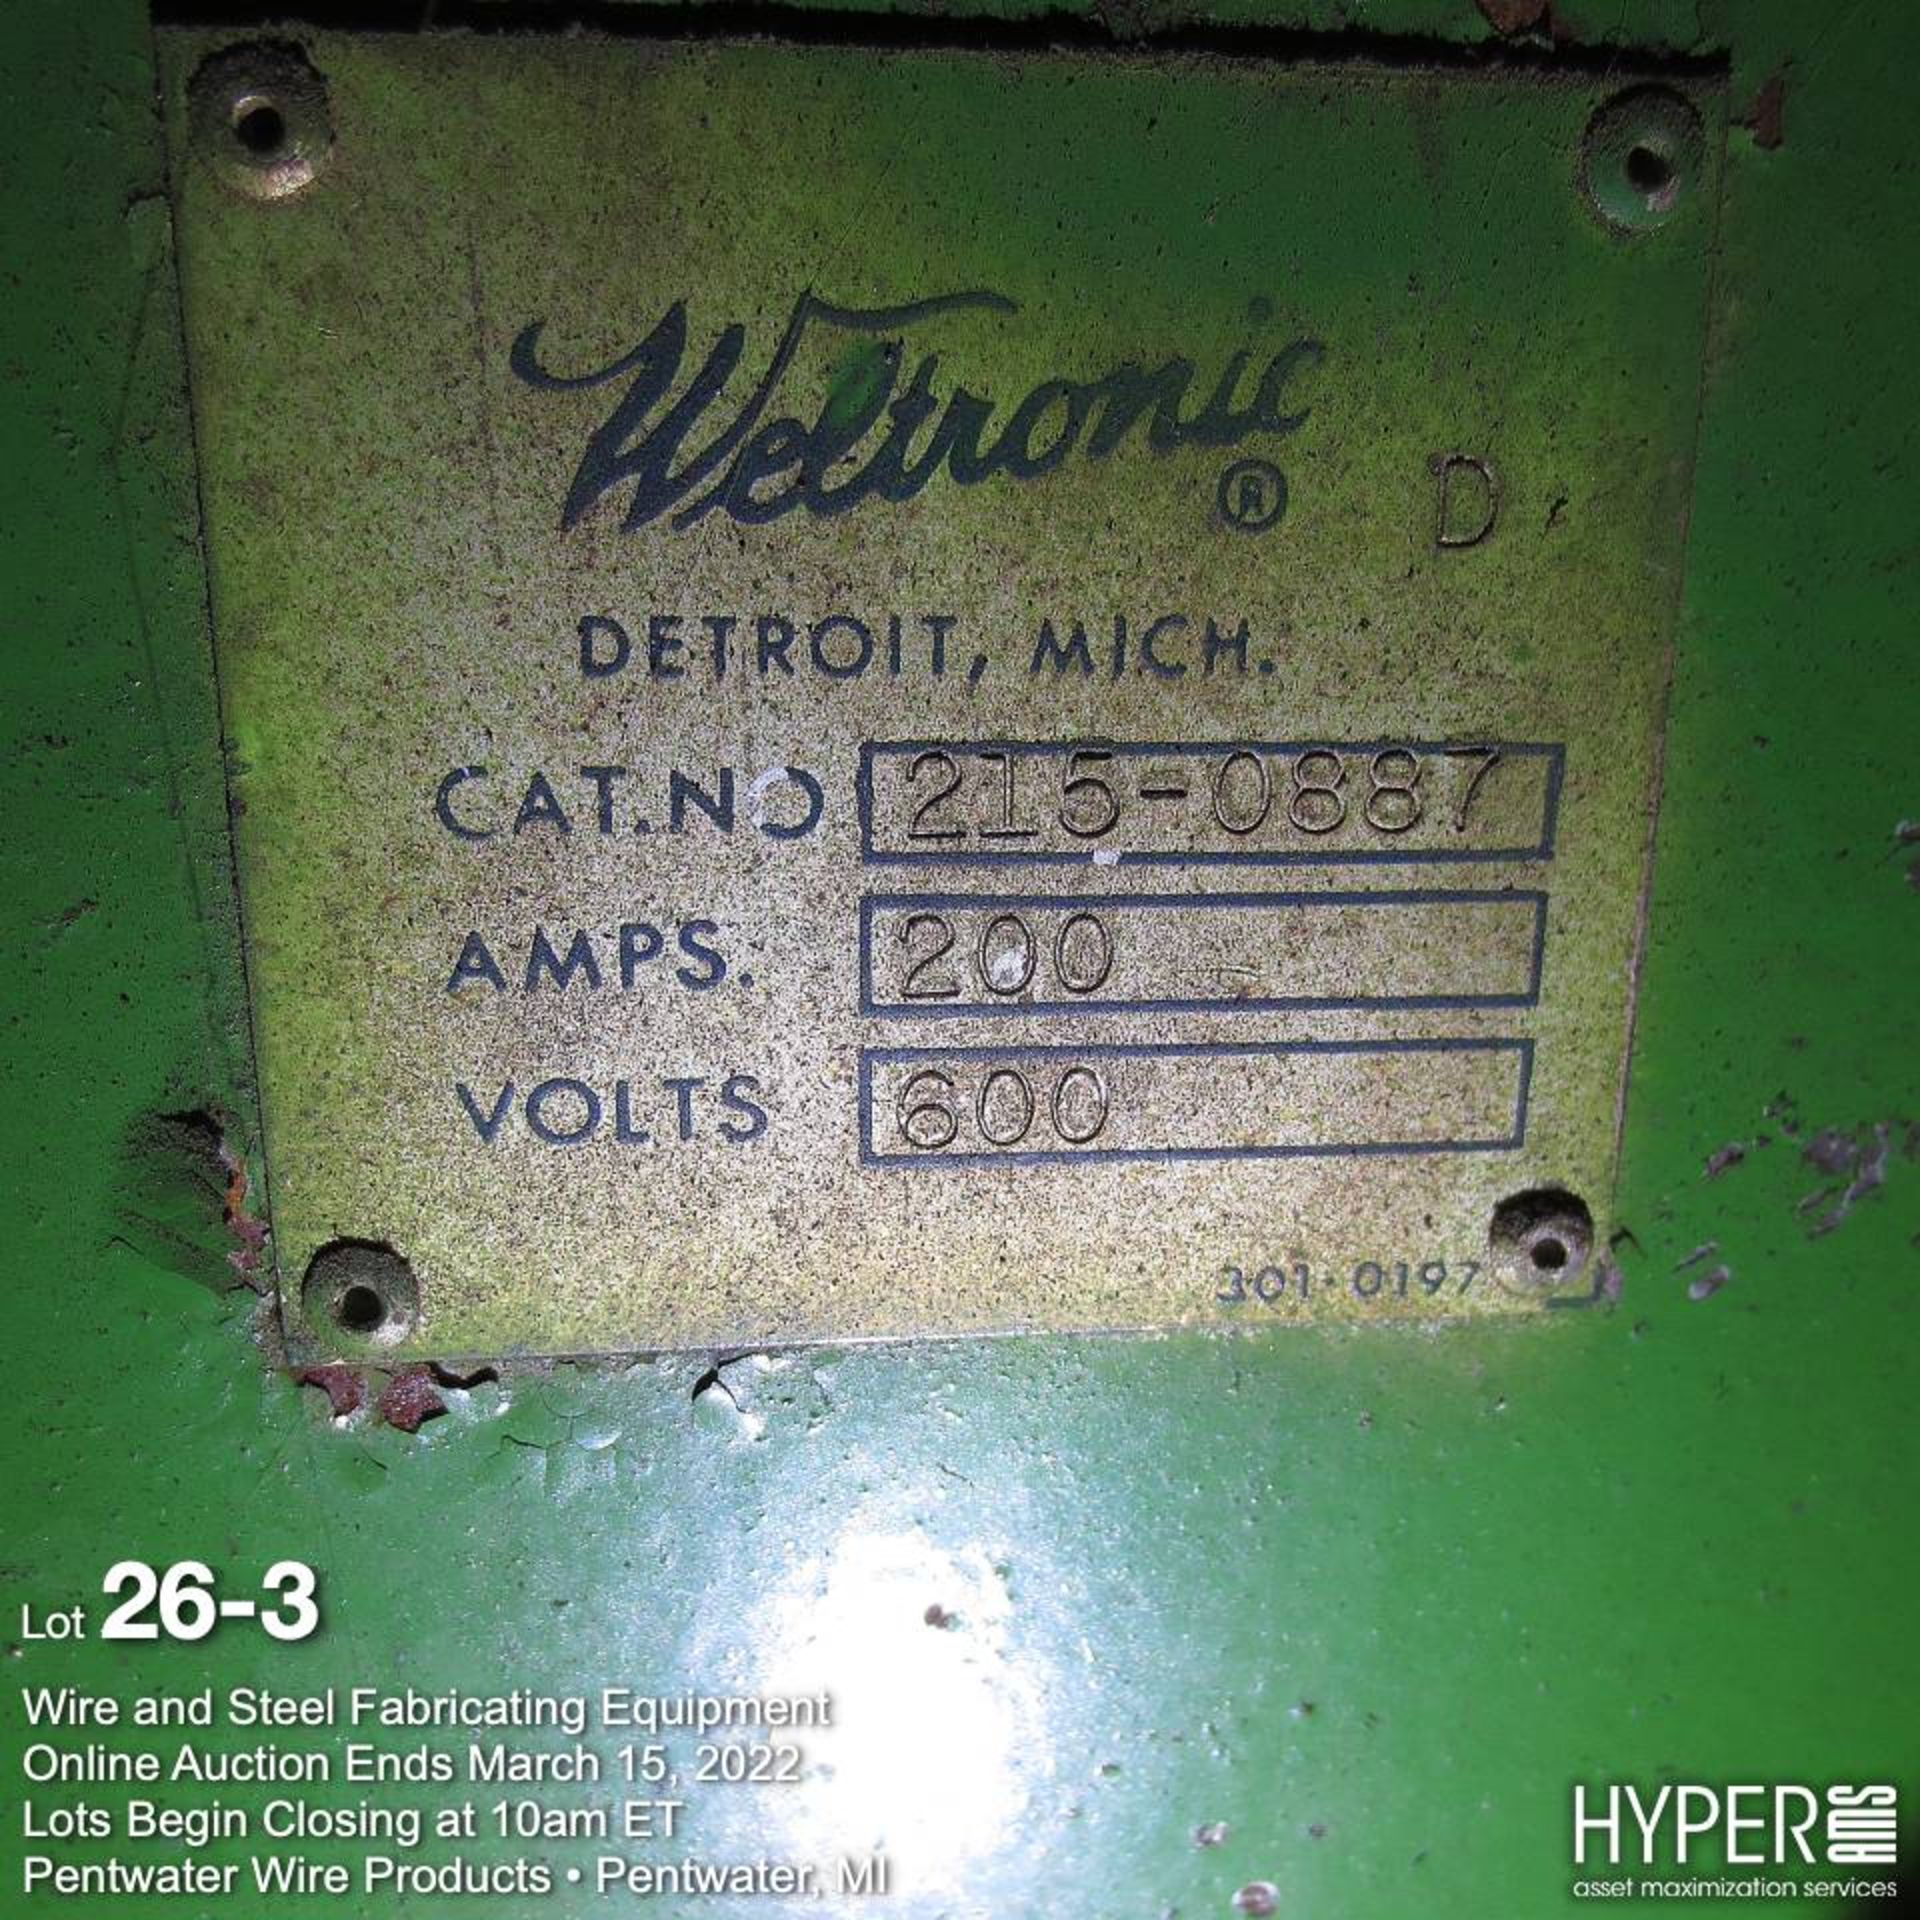 Weltronic spot welder, 600V, 200A - Image 5 of 14